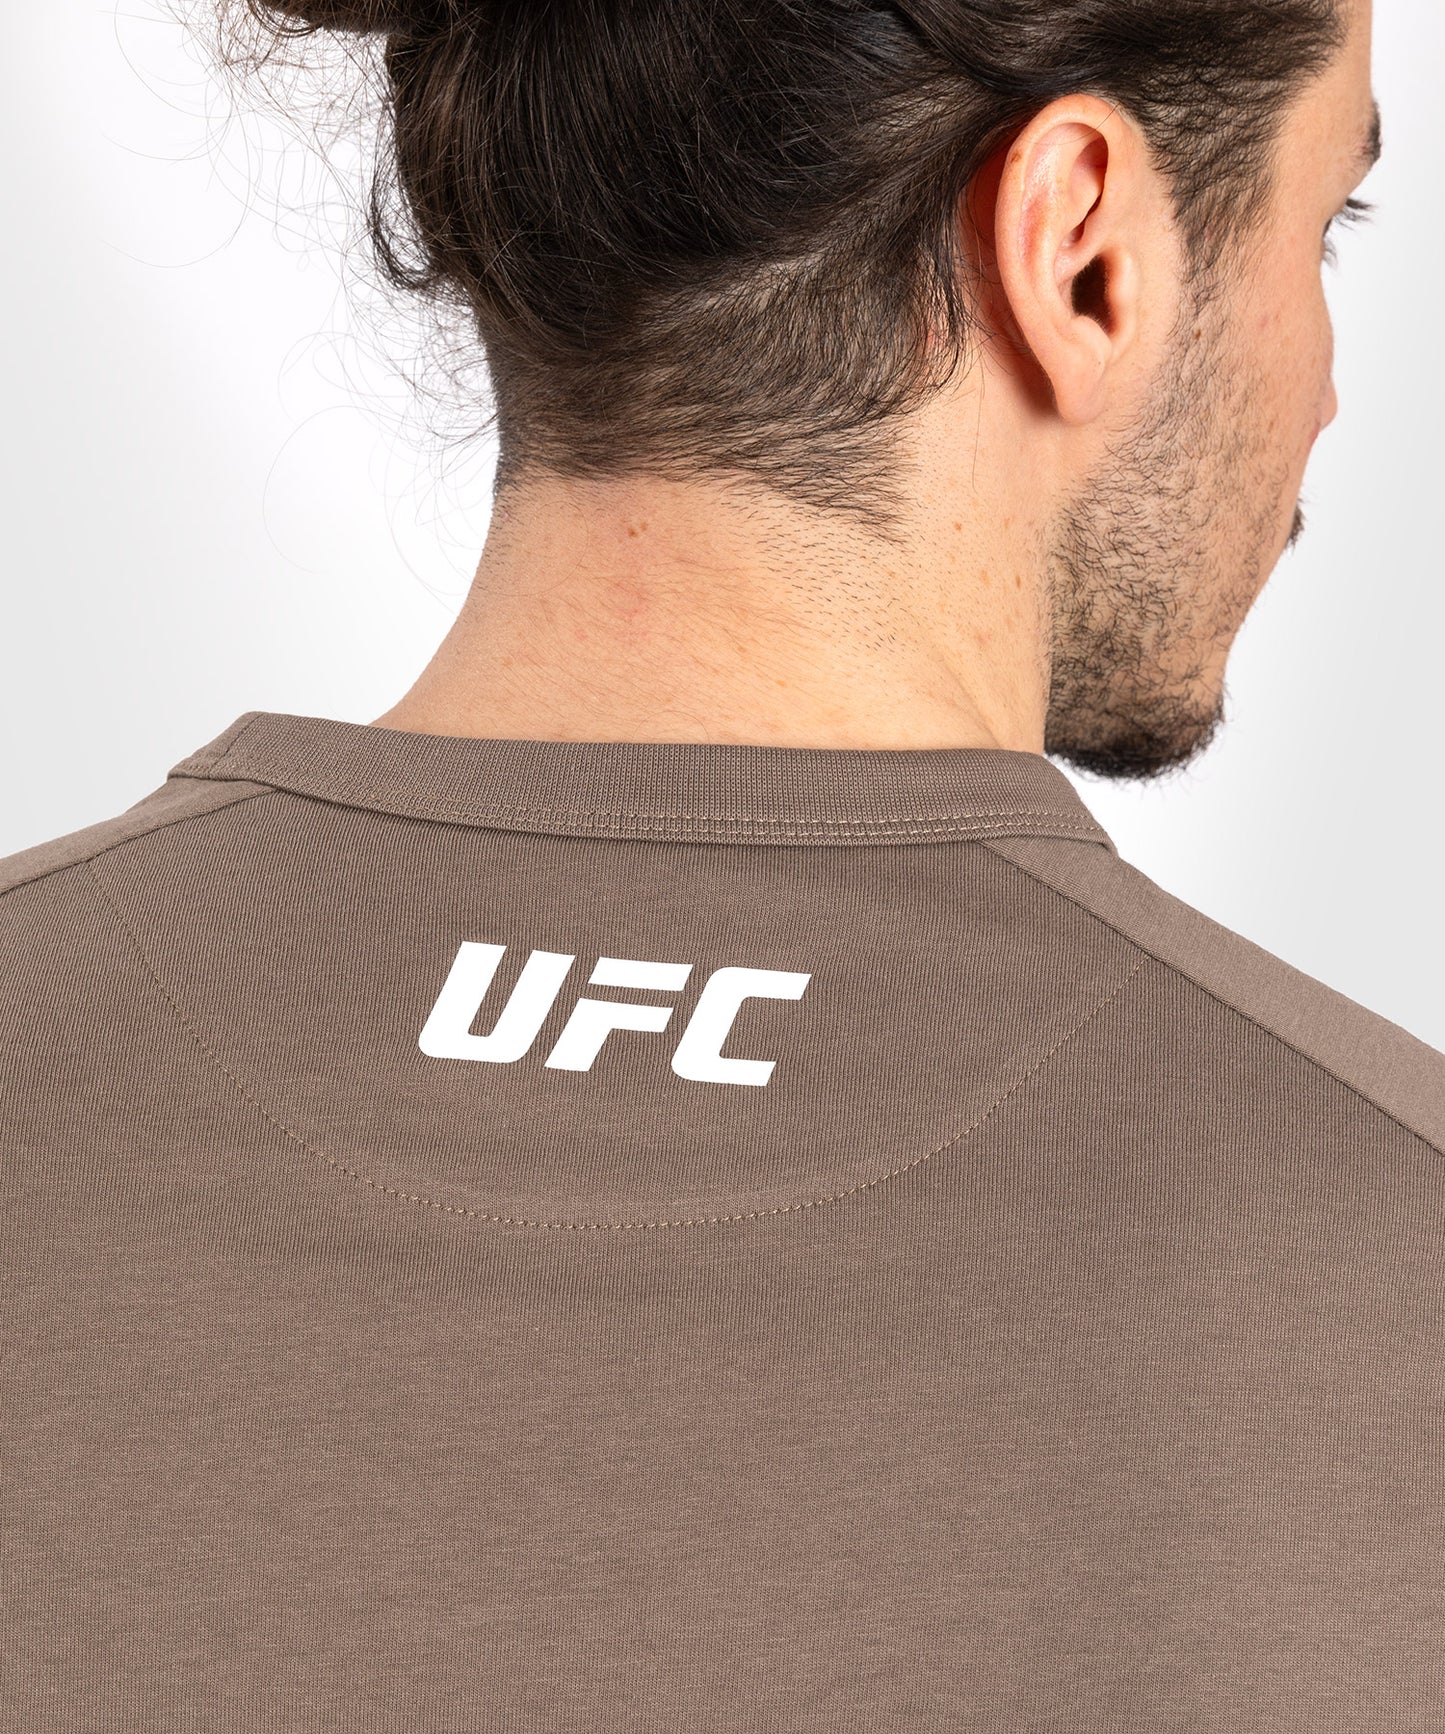 T-Shirt À Manches Longues pour Hommes UFC Adrenaline by Venum Fight Week - Bronze